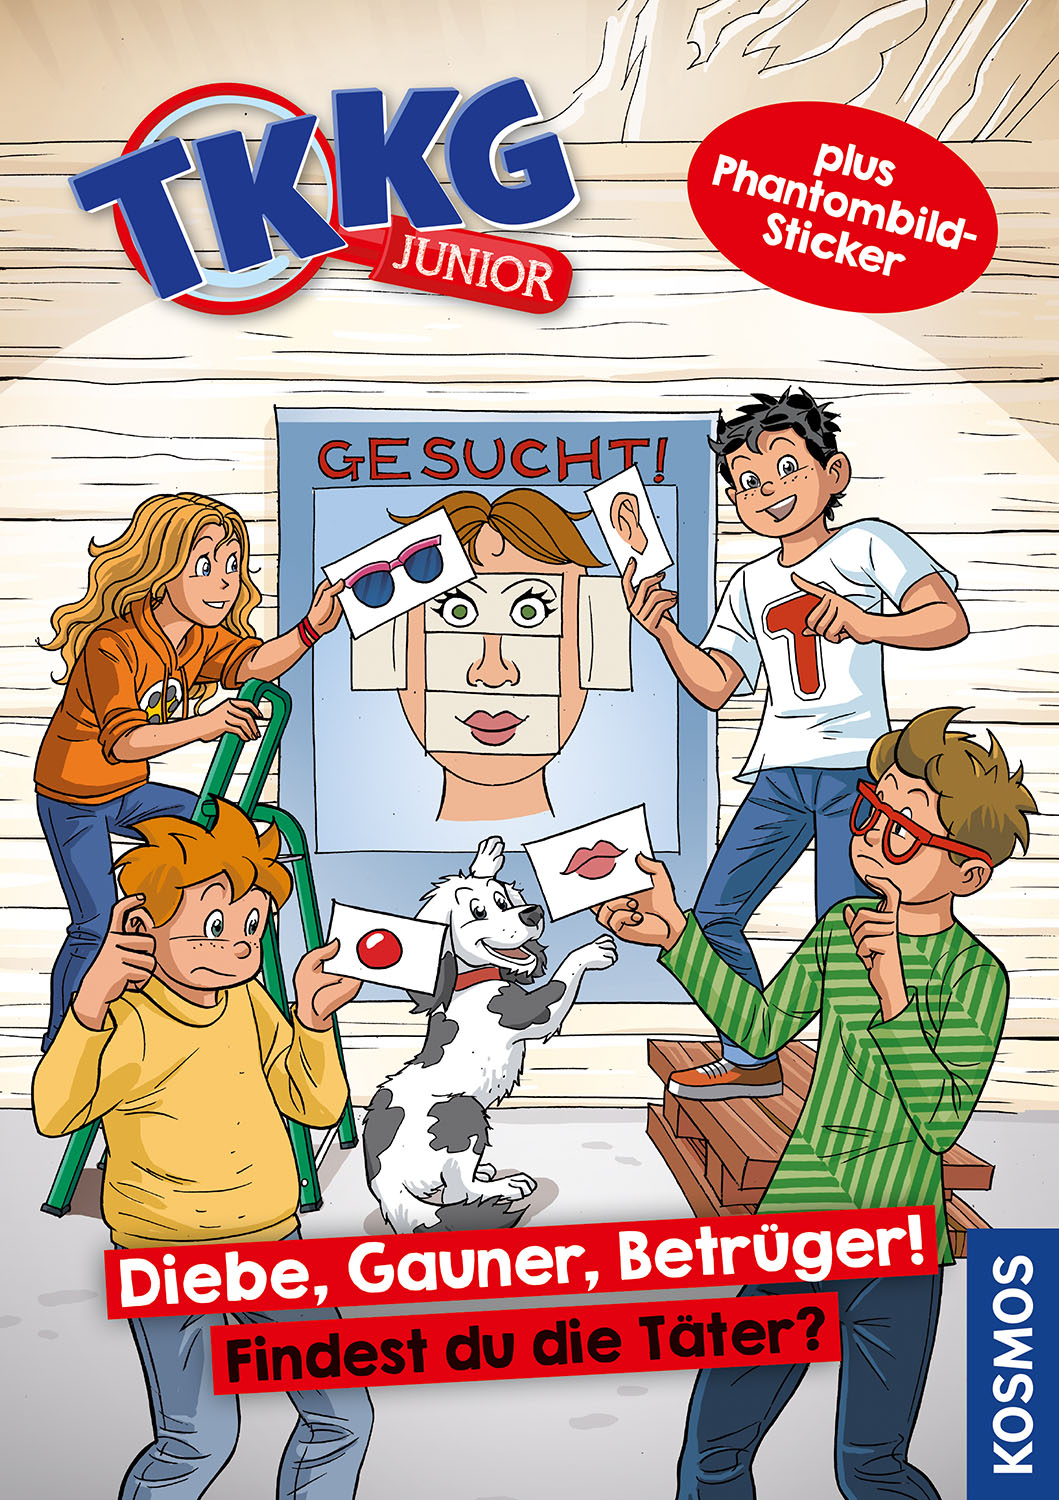 TKKG Junior BuchDiebe, Gauner, Betrüger!